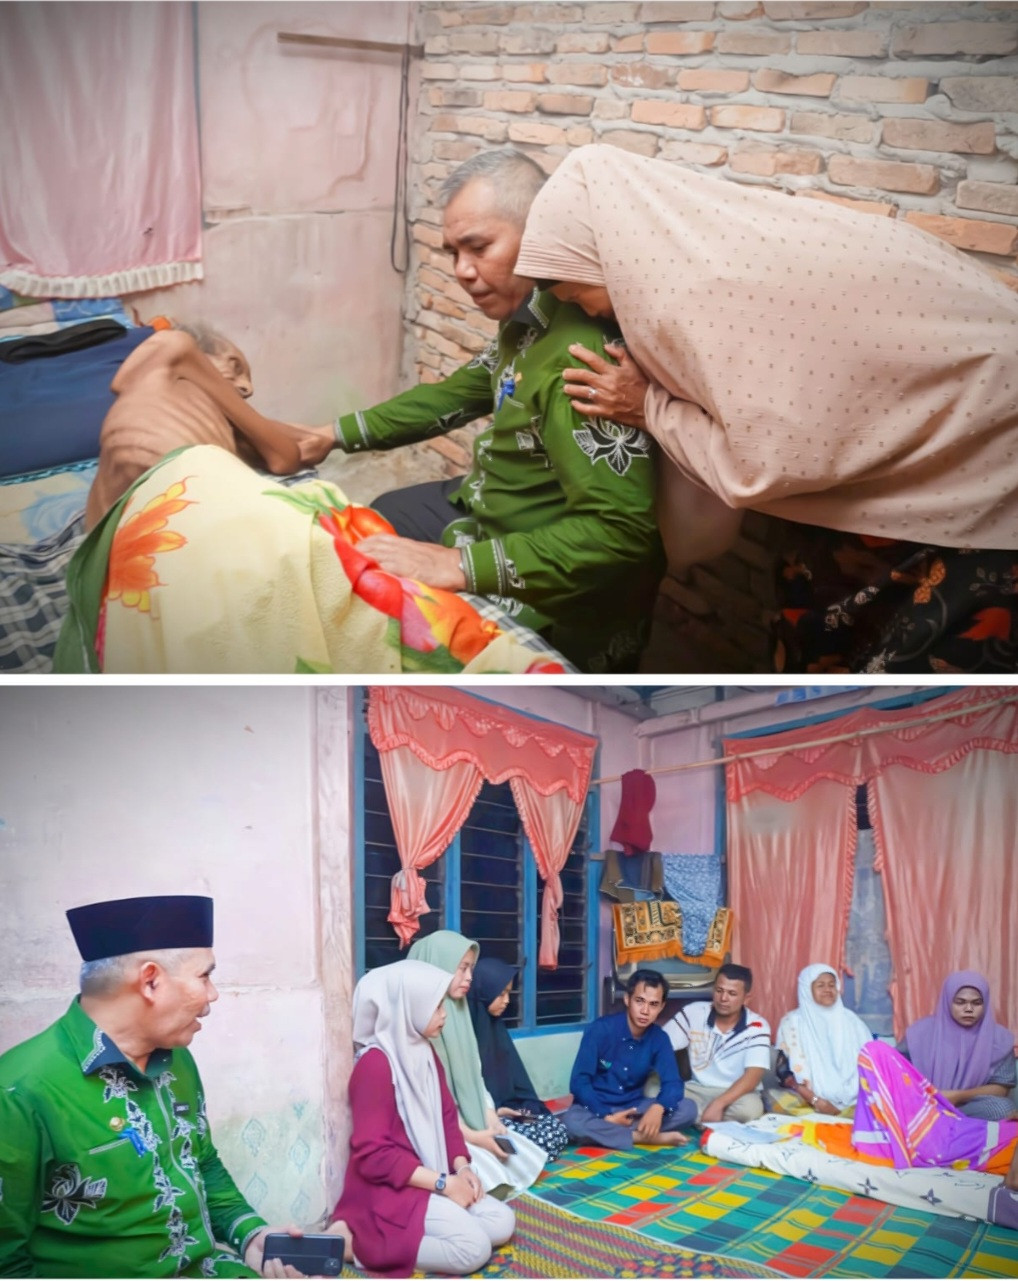 Pj Bupati Kampar Kamsol Jenguk Warga Desa Peramabah lama Sakit, Langsung di Rawat di RSUD 